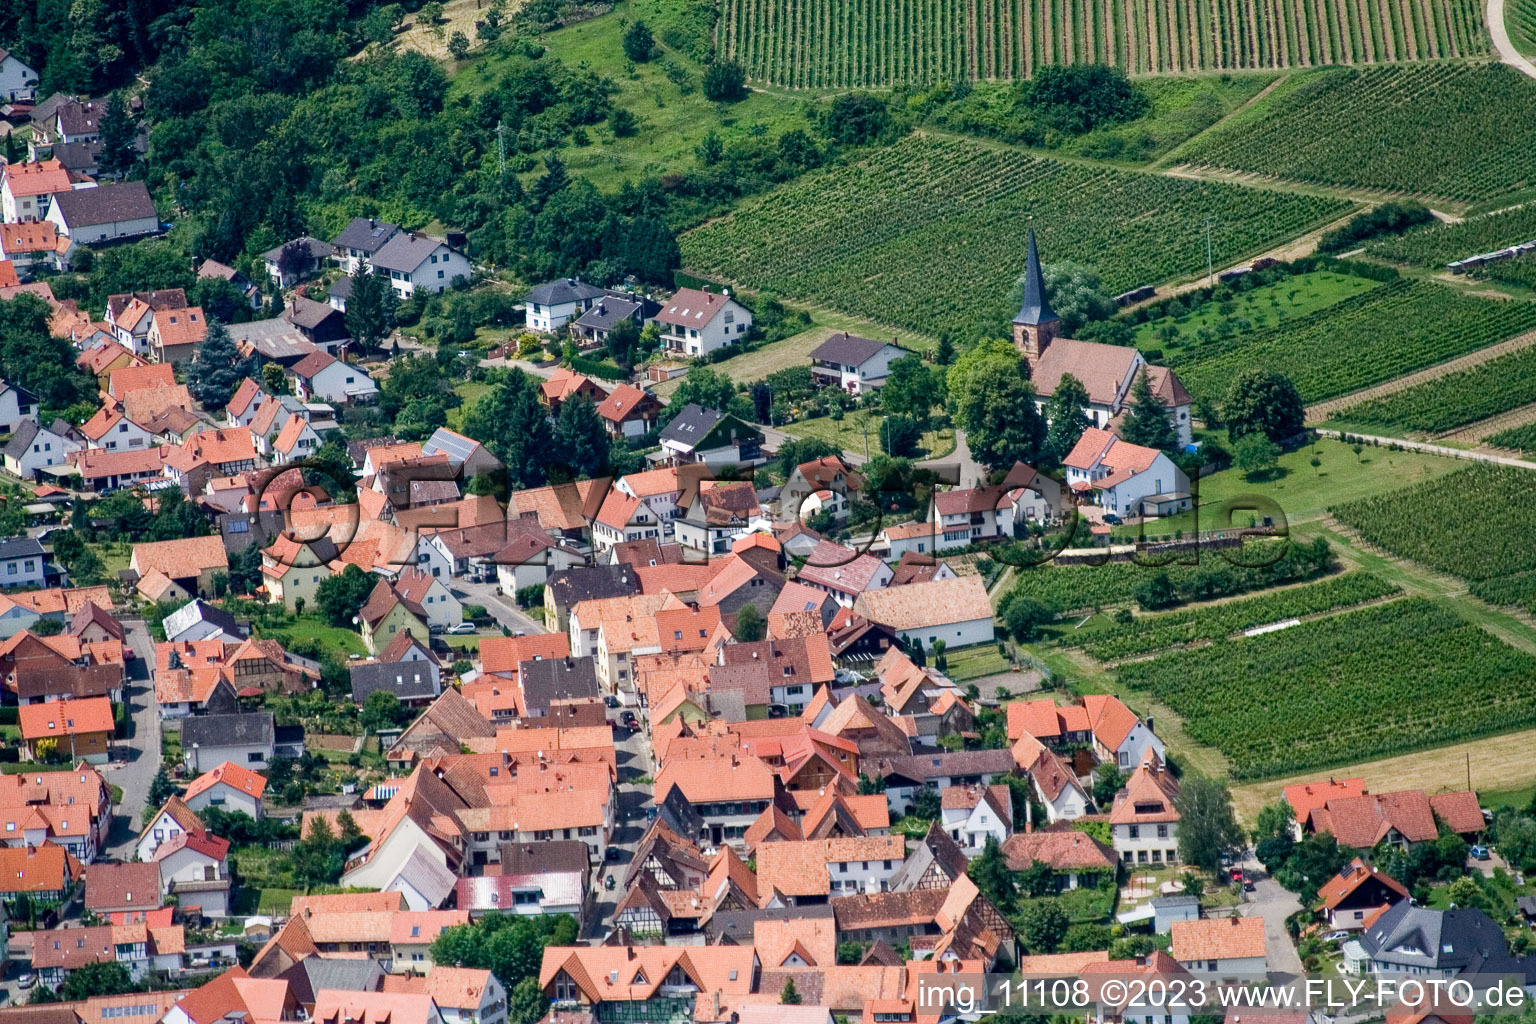 District Rechtenbach in Schweigen-Rechtenbach in the state Rhineland-Palatinate, Germany viewn from the air